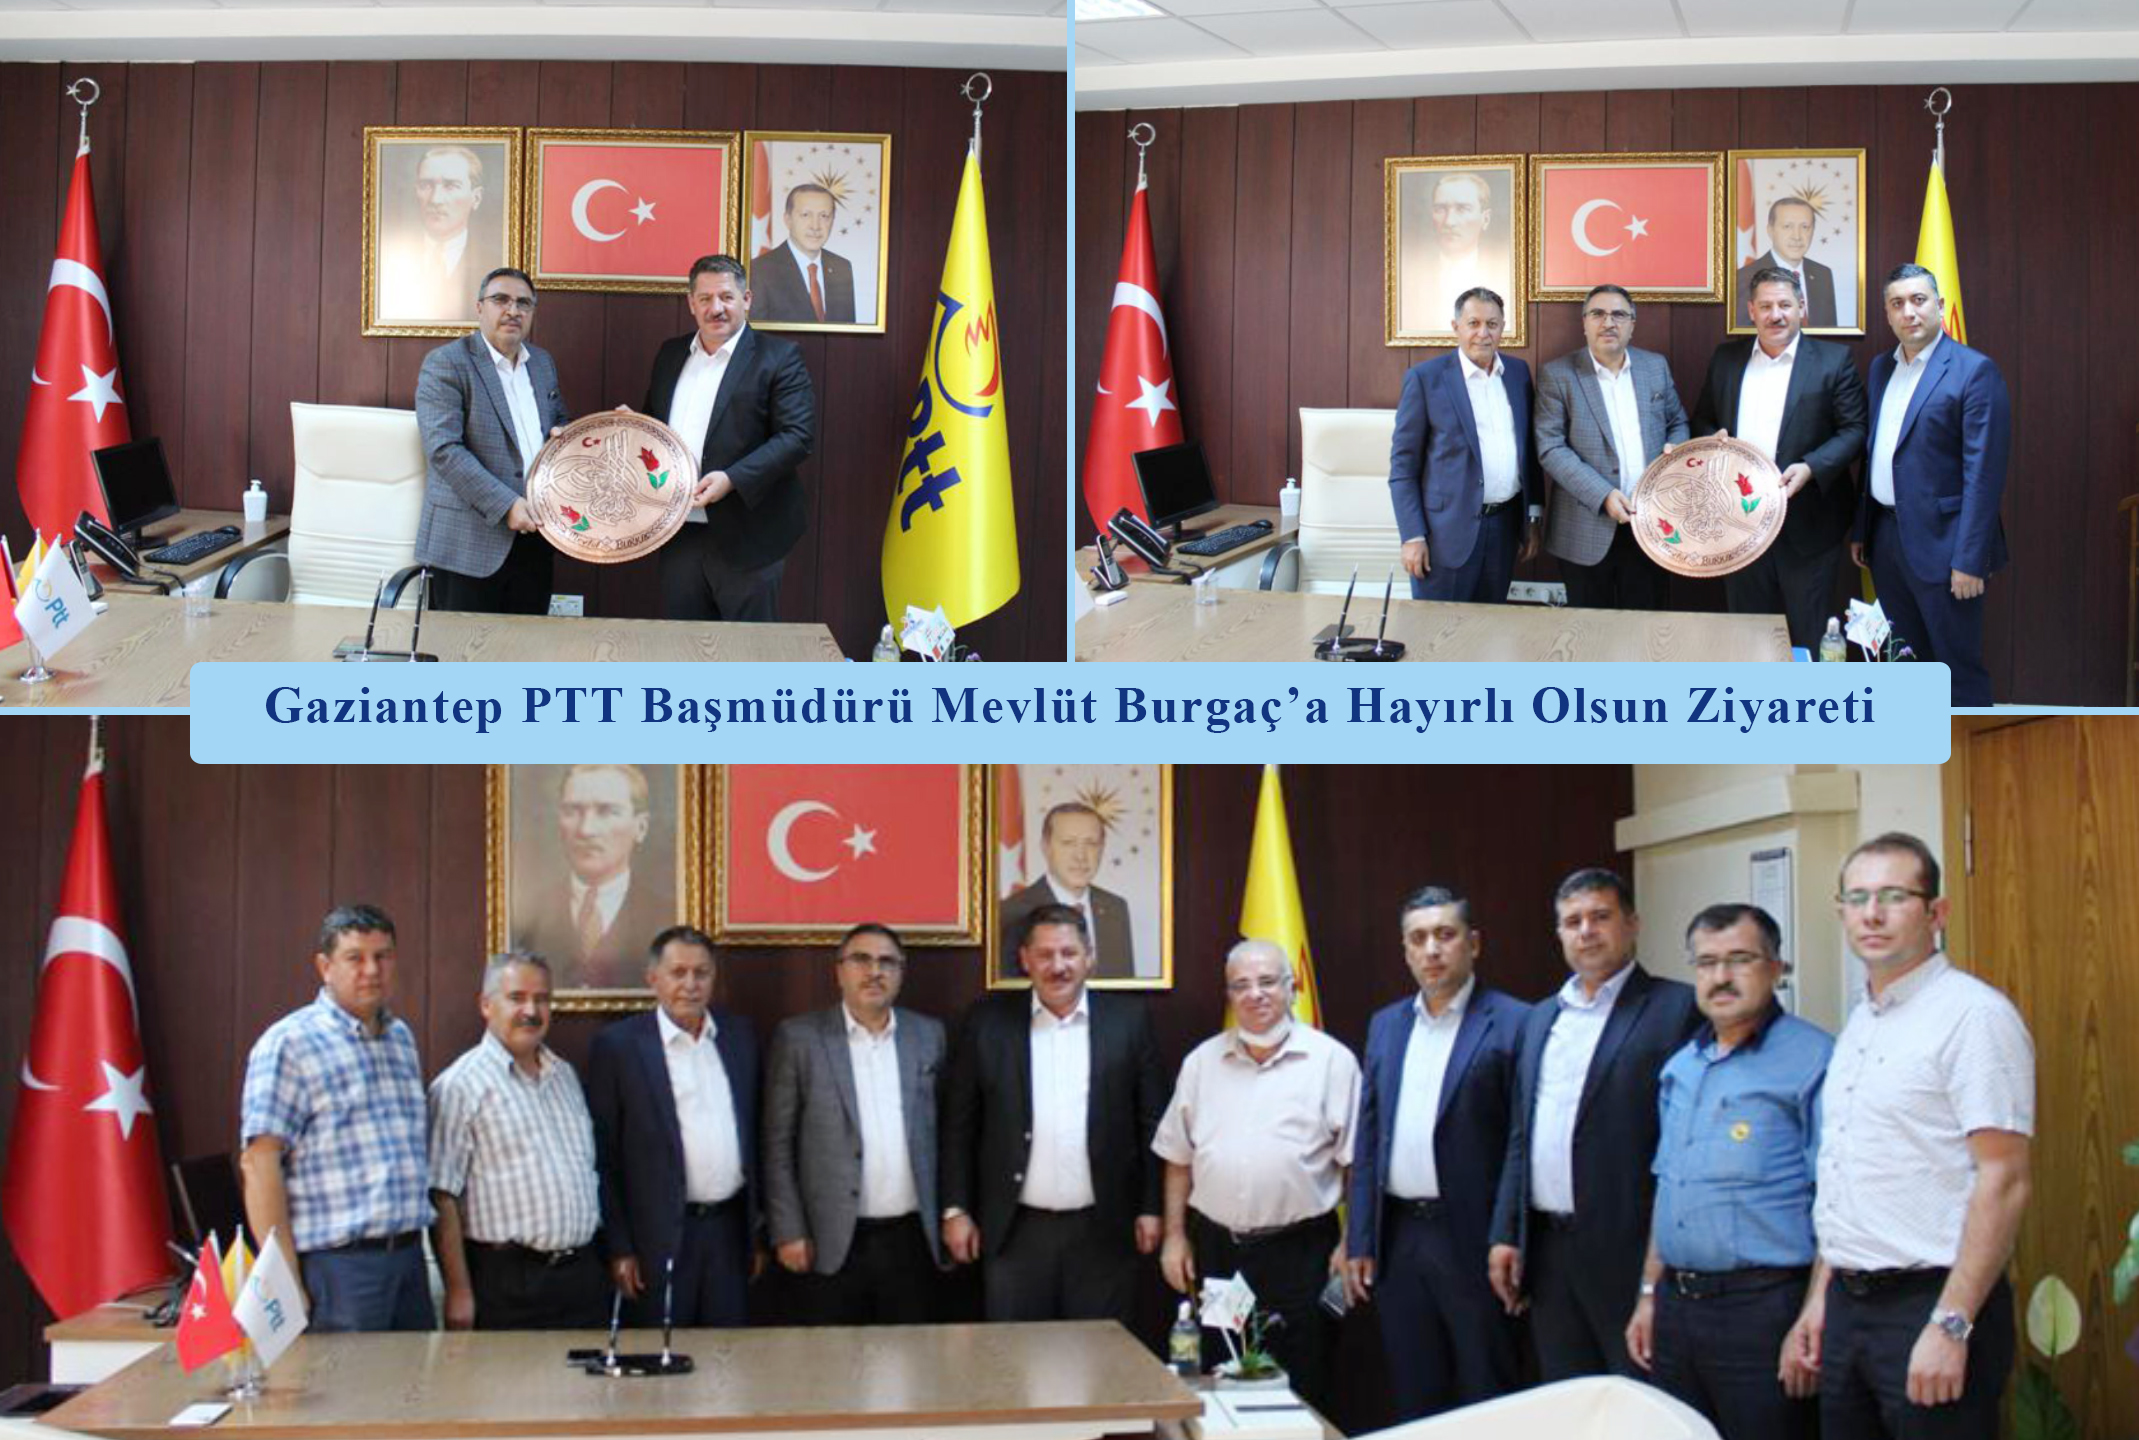 Gaziantep PTT Başmüdürü Mevlüt Burgaç’a Hayırlı Olsun Ziyareti